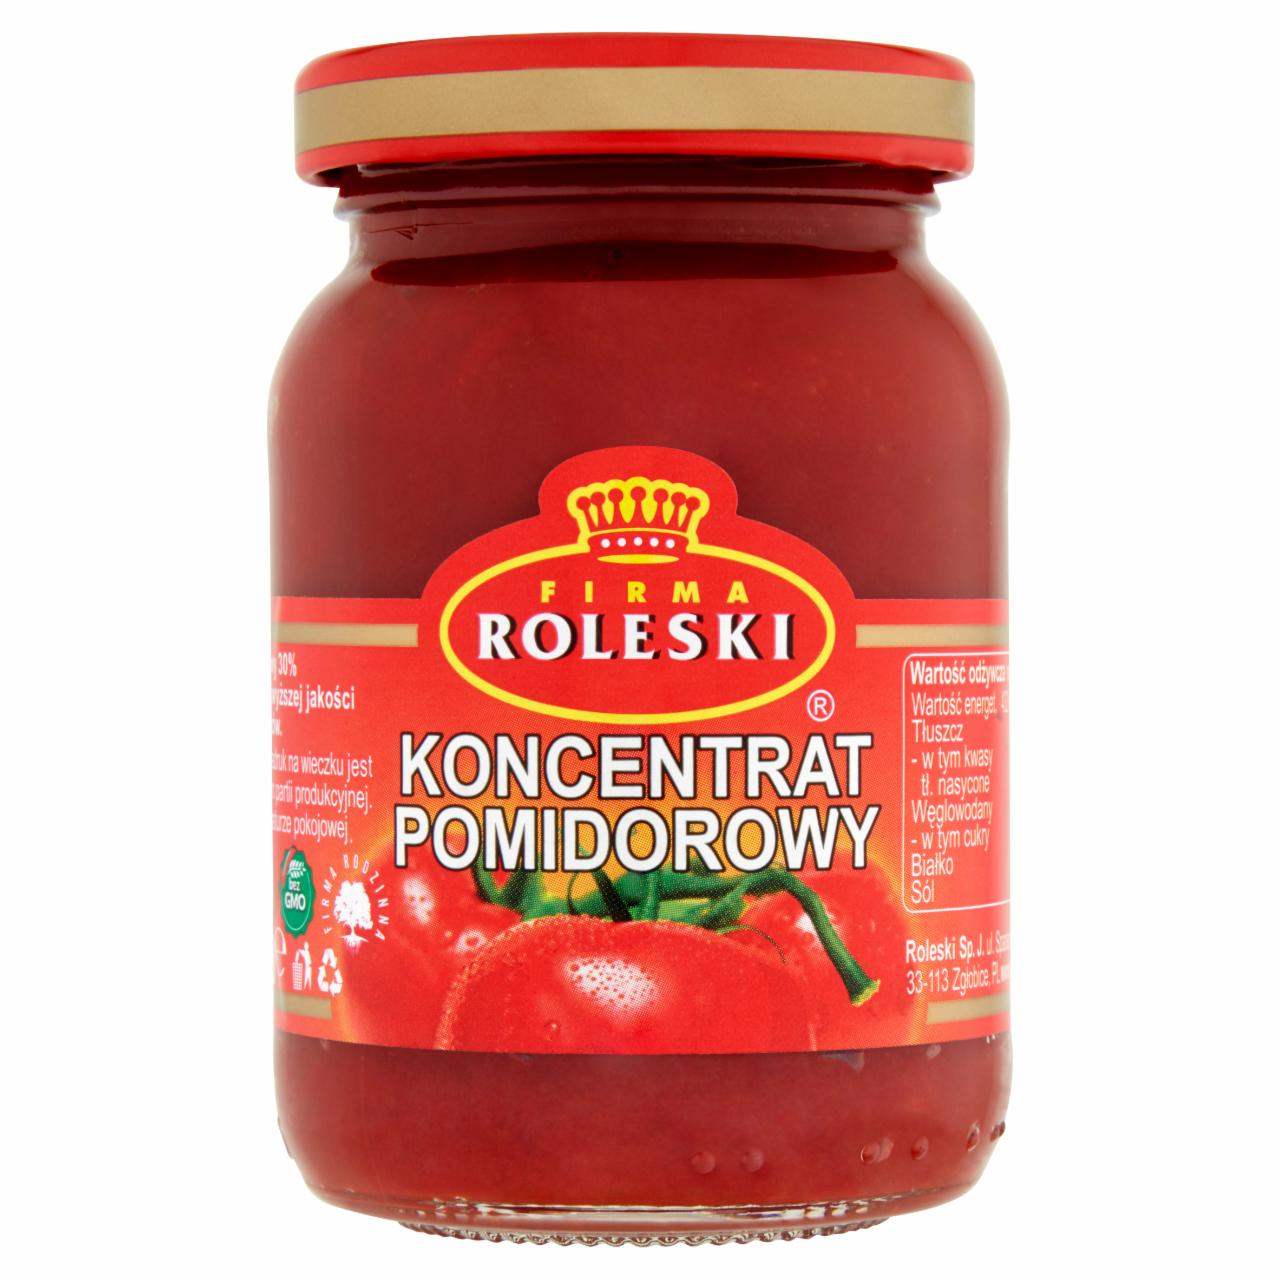 Zdjęcia - Firma Roleski Koncentrat pomidorowy 30% 200 g